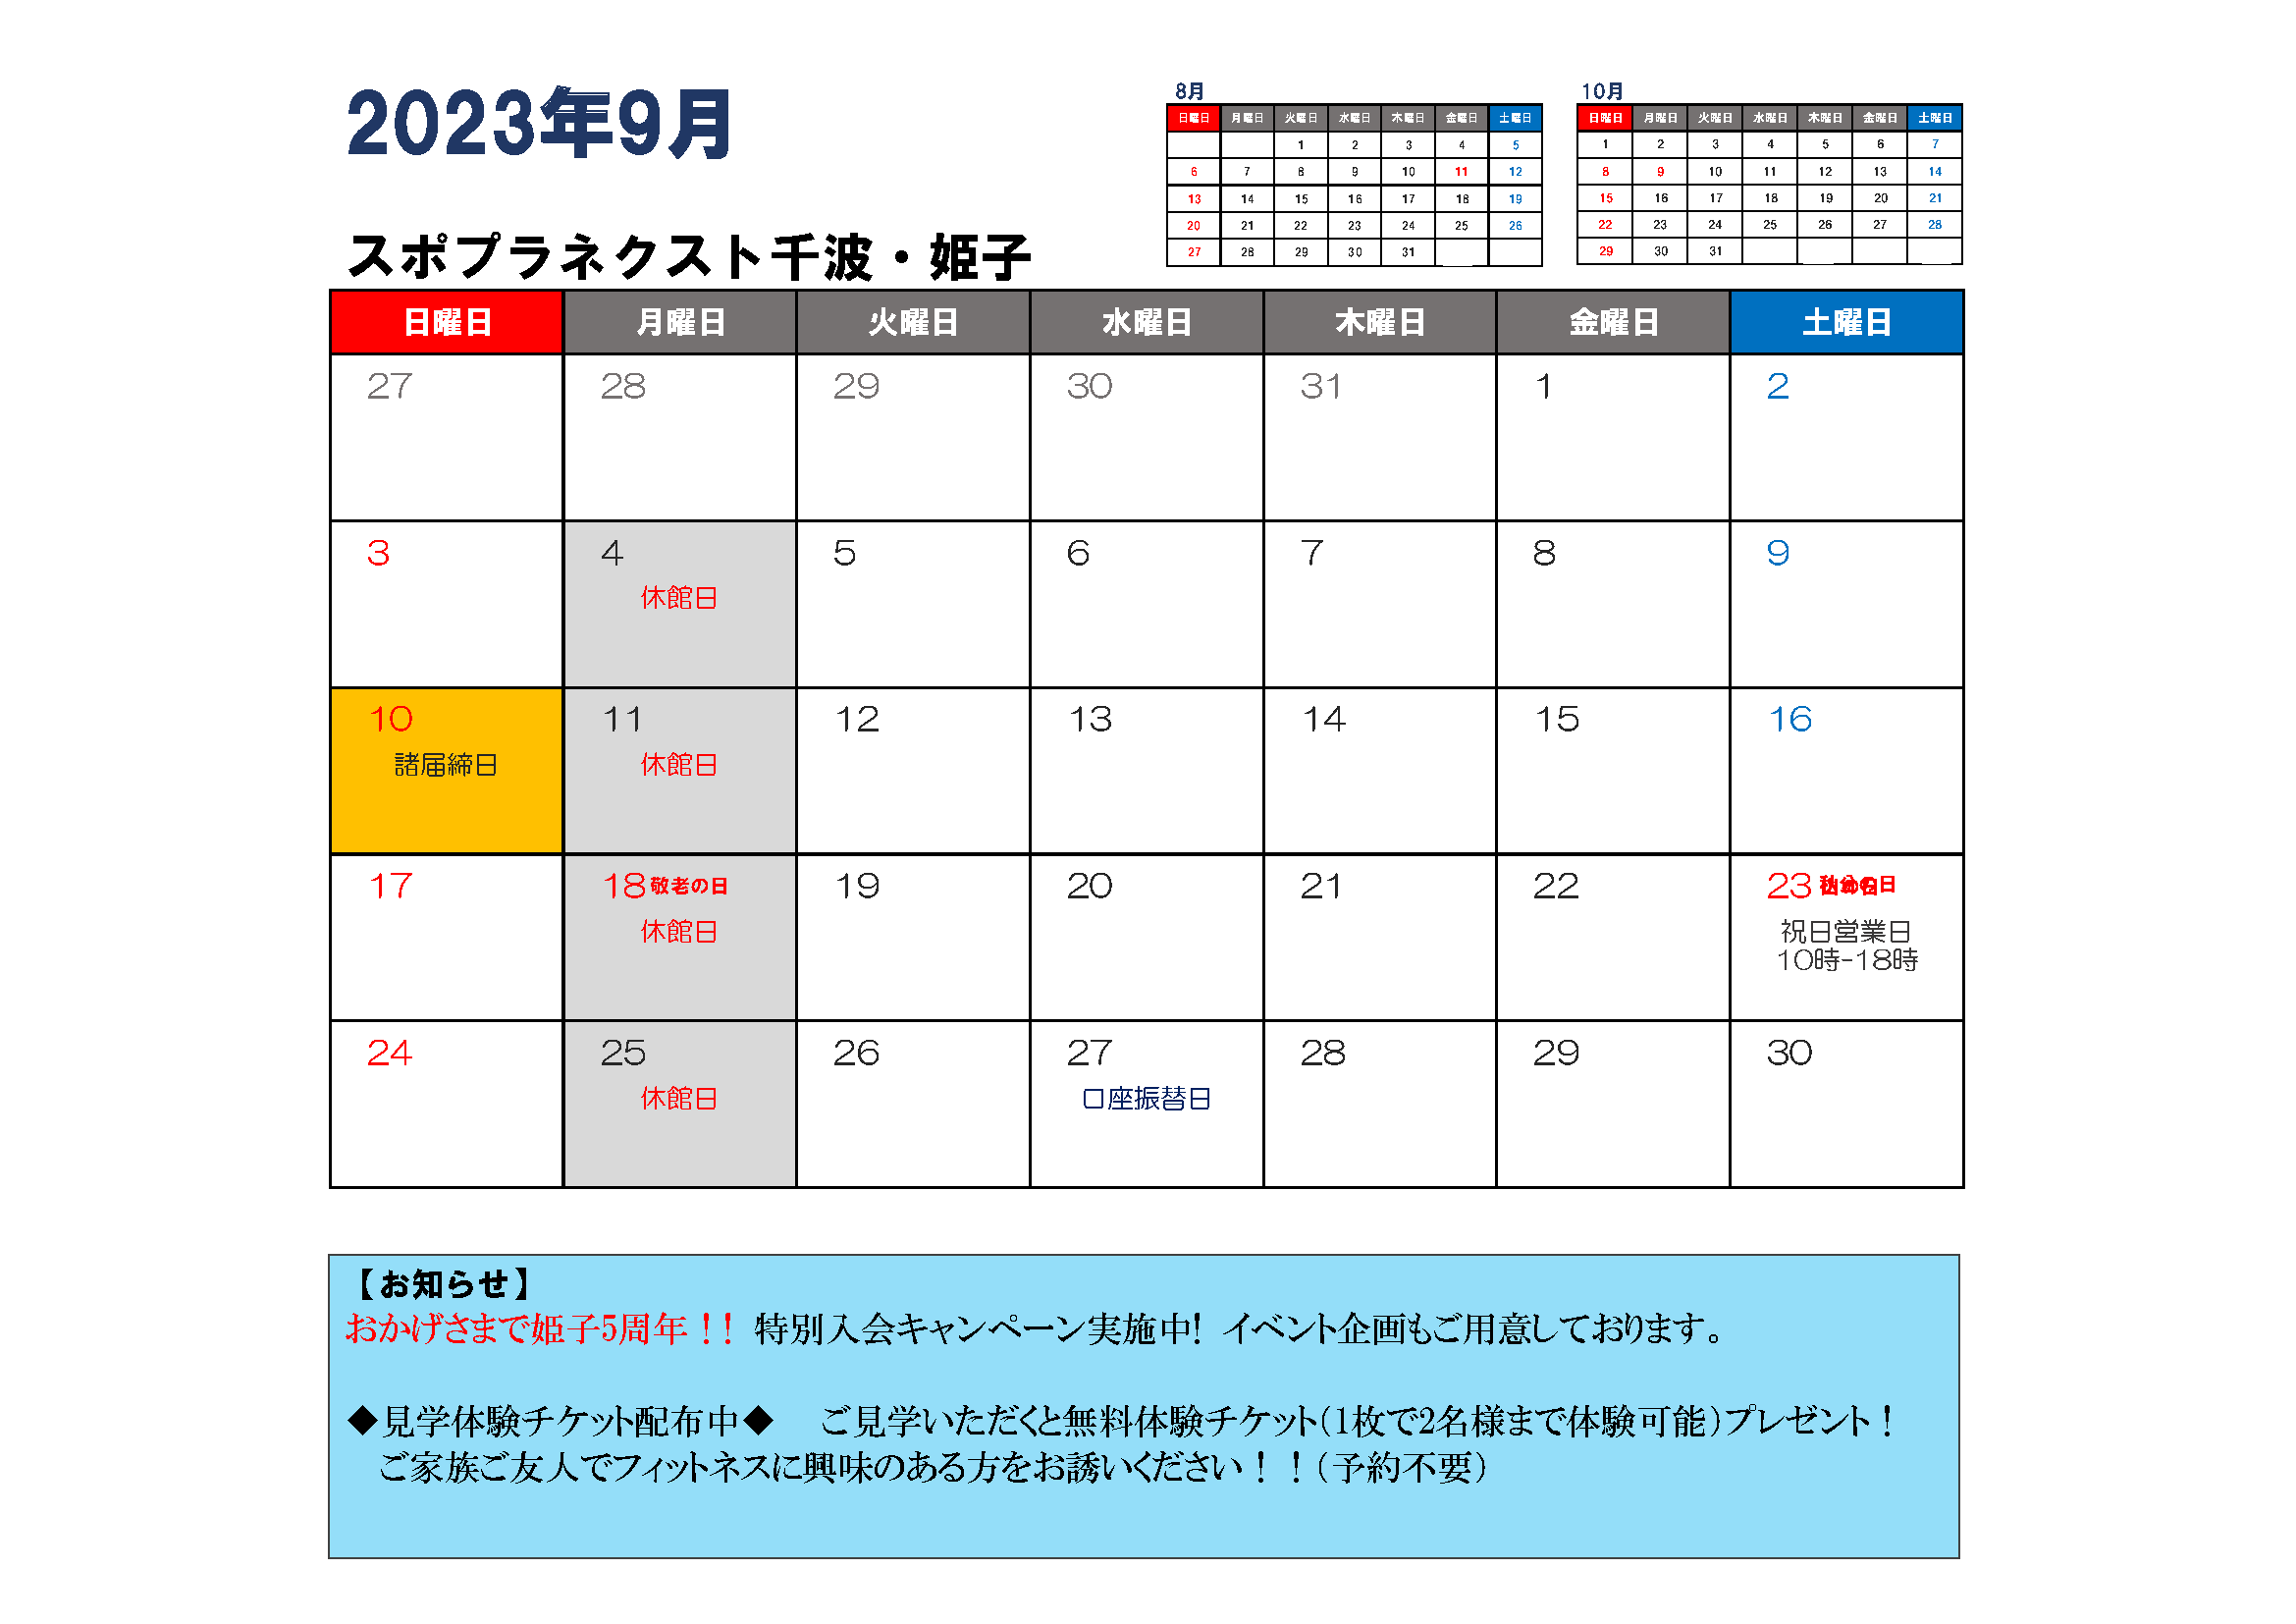 9月分スポプラネクスト水戸千波イベントカレンダー